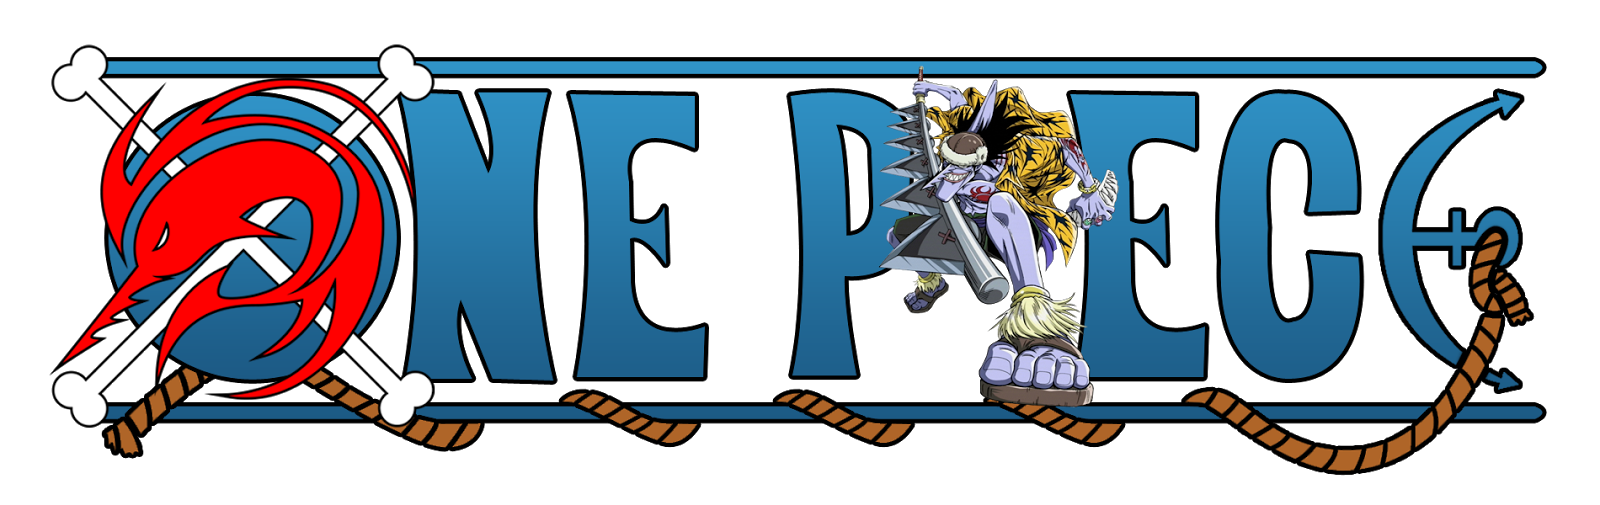 Zona Artikel: Logo One Piece Terbaru by yudisevenstar via deviantART